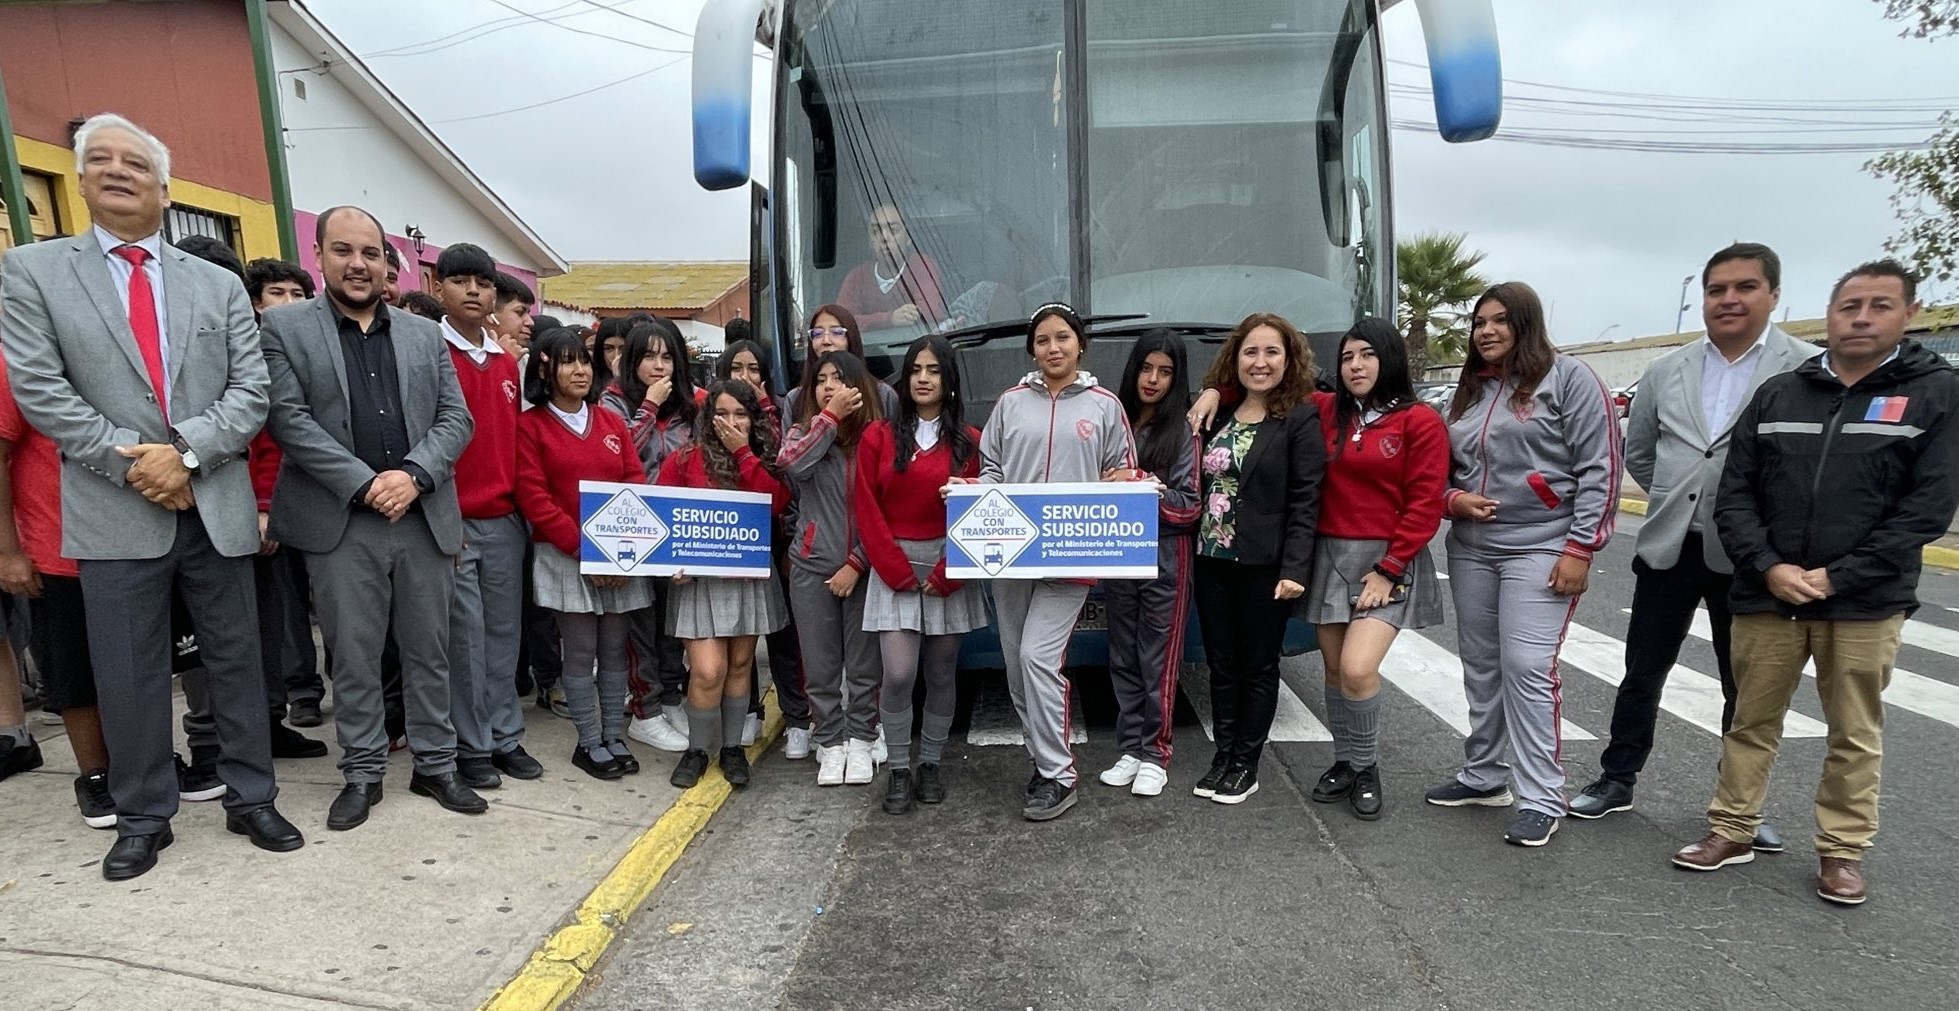 Subsidio de transporte escolar gratuito beneficia a más de 80 estudiantes del Liceo Fernando Binvignatde Coquimbo